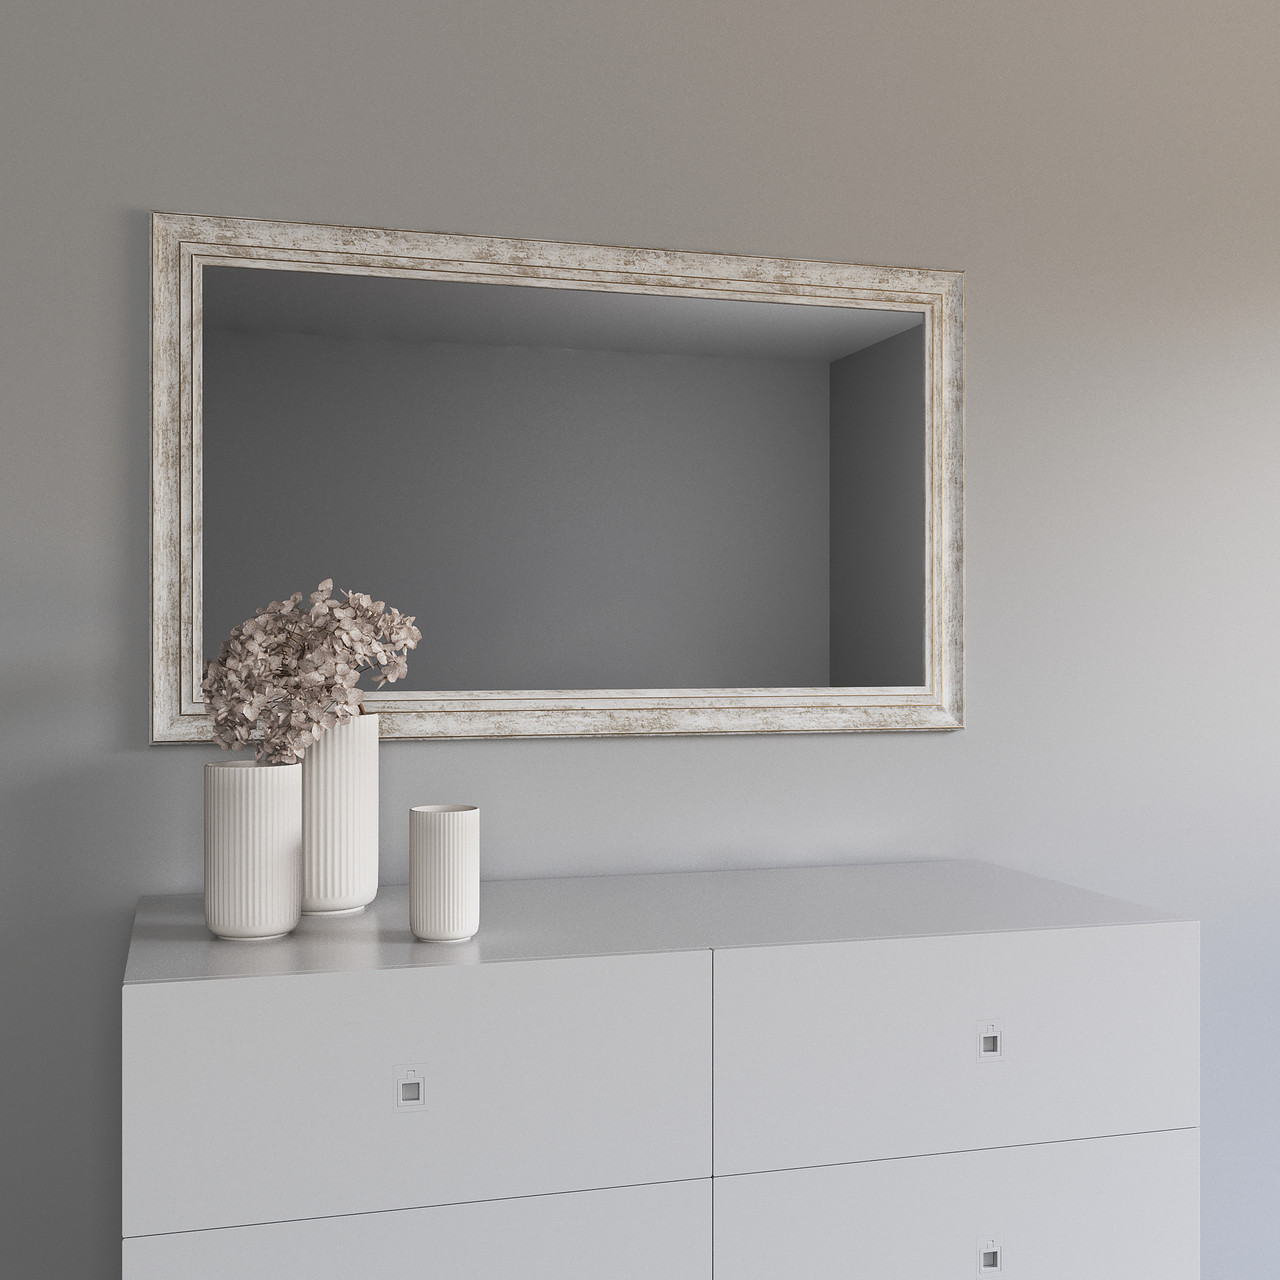 Дзеркало настінне у білій рамі 122х72 з коричневою патиною Black Mirror широке для салону краси